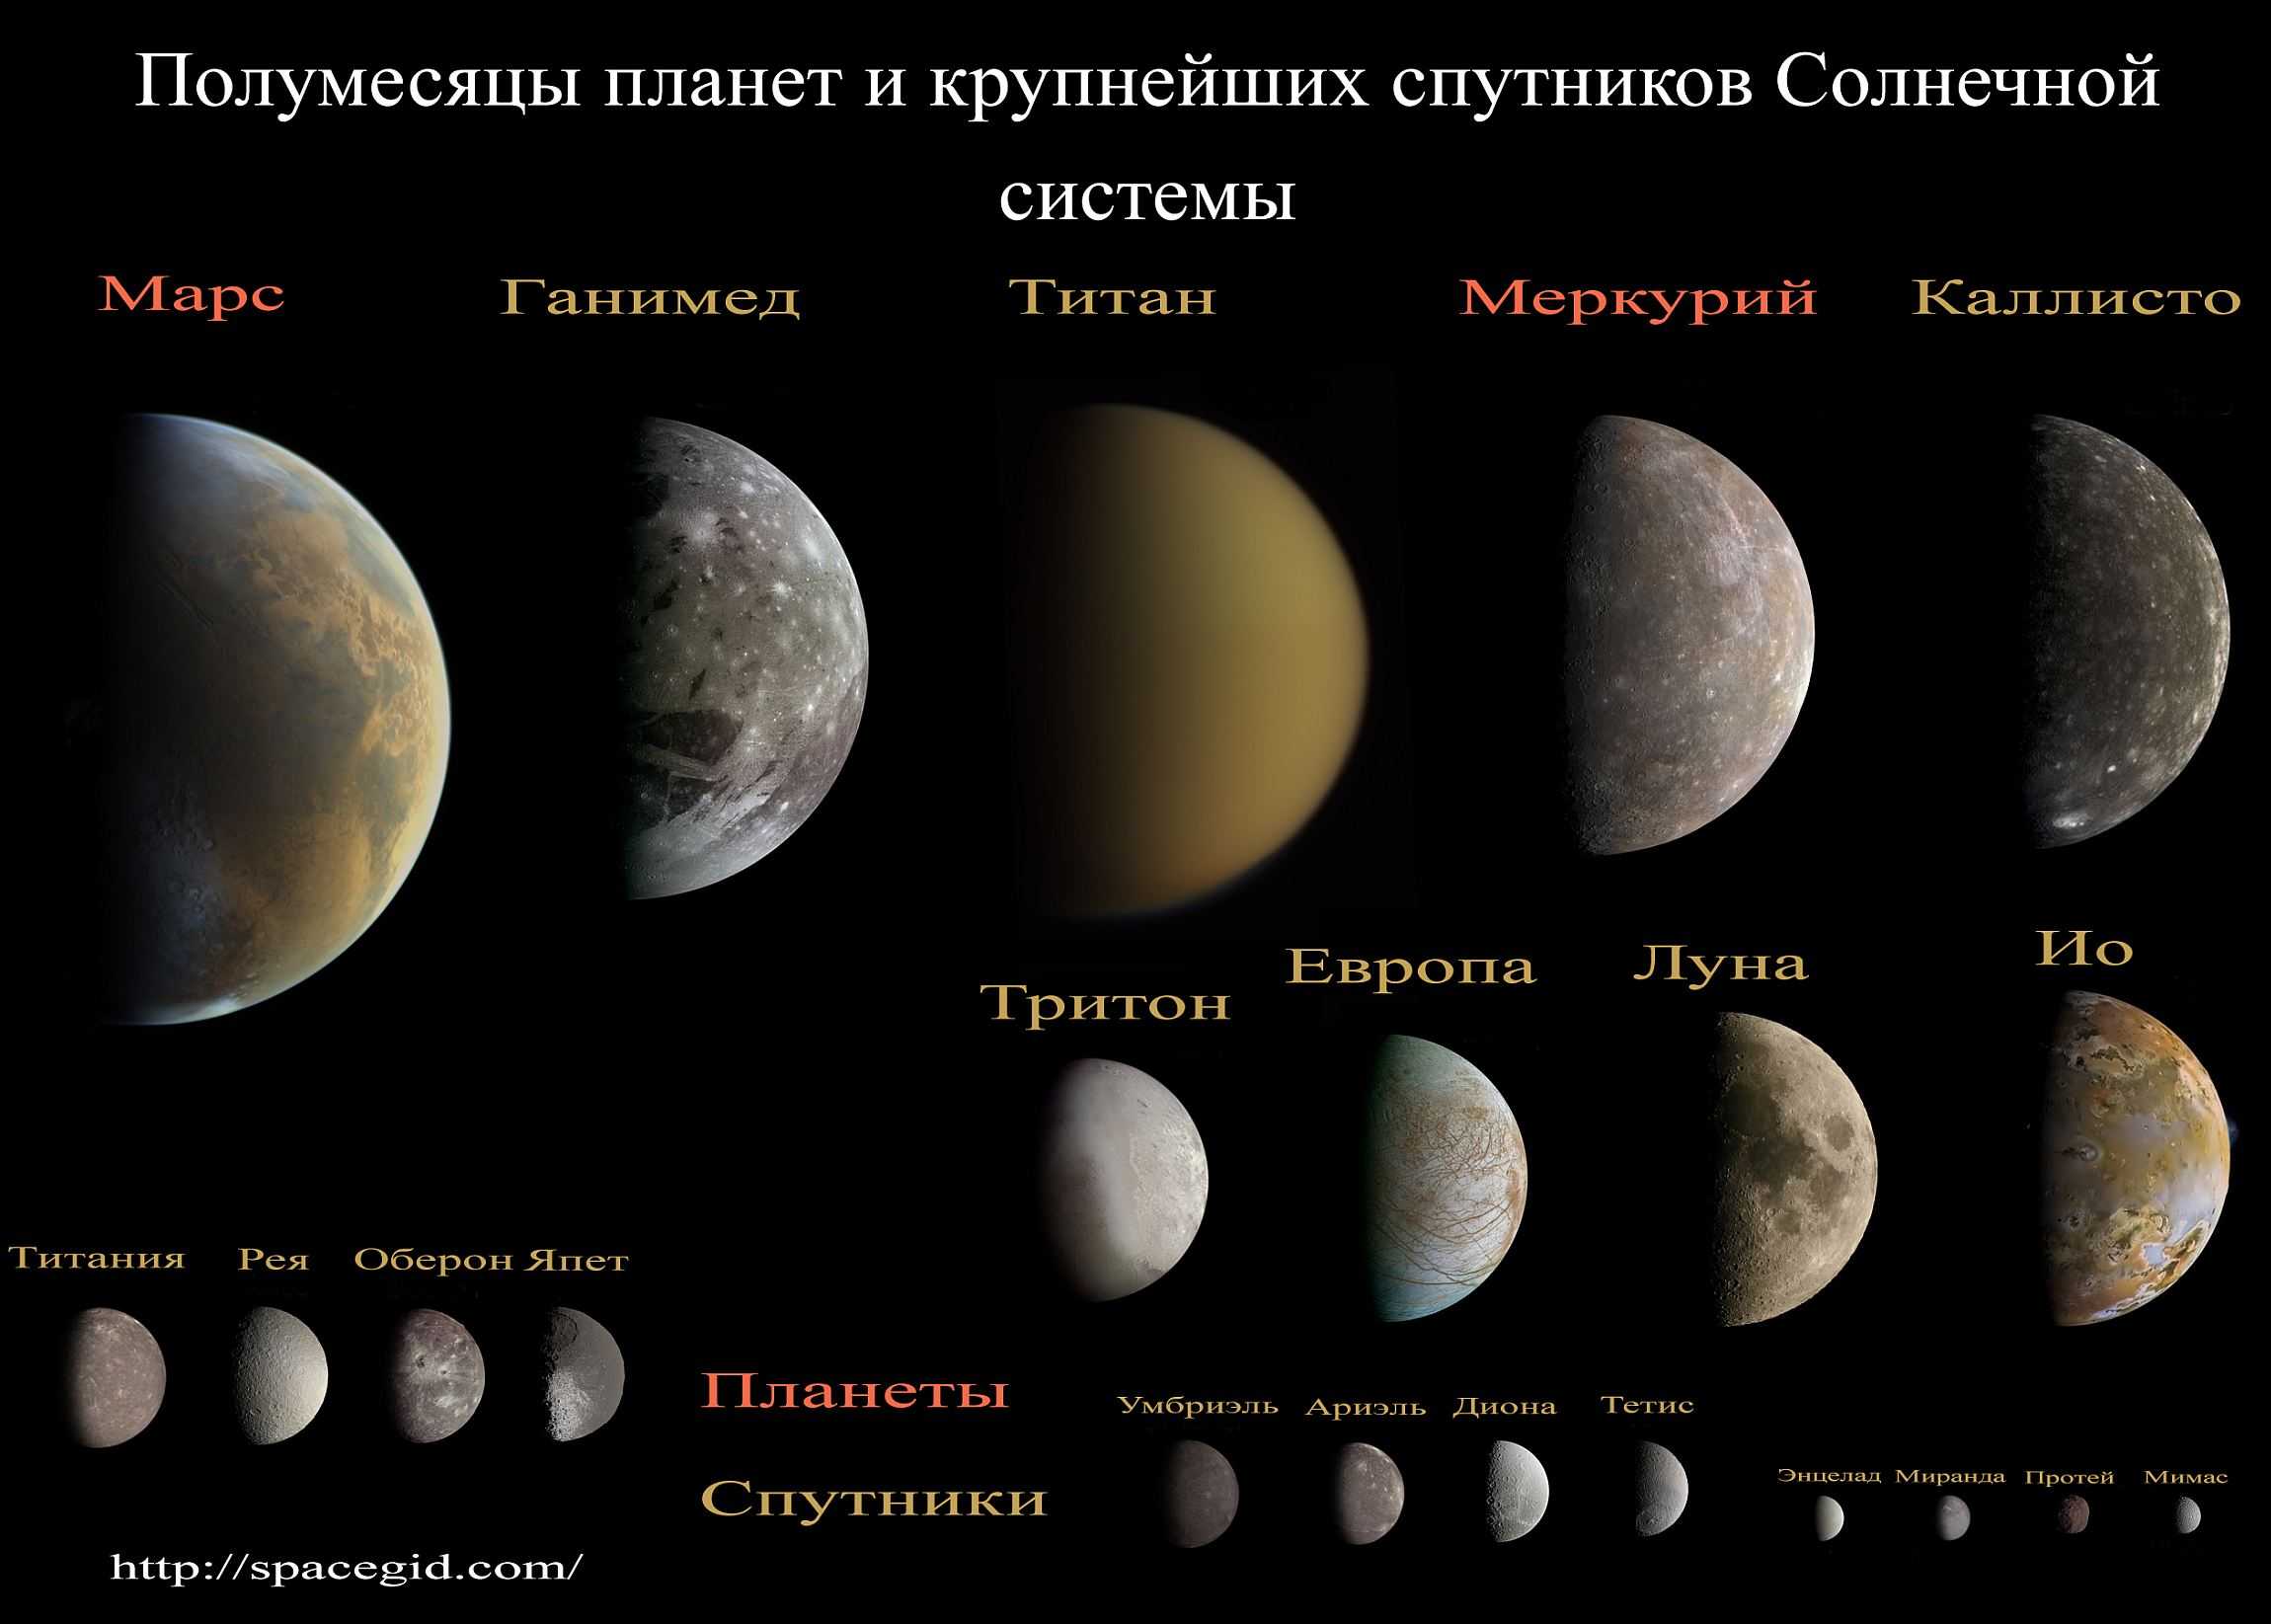 Спутники больше луны. Спутники планет солнечной системы. Солнечная система спутники планет солнечной системы. Спутники планет нашей солнечной системы. Солнечная система это планеты солнечной системы со спутниками.